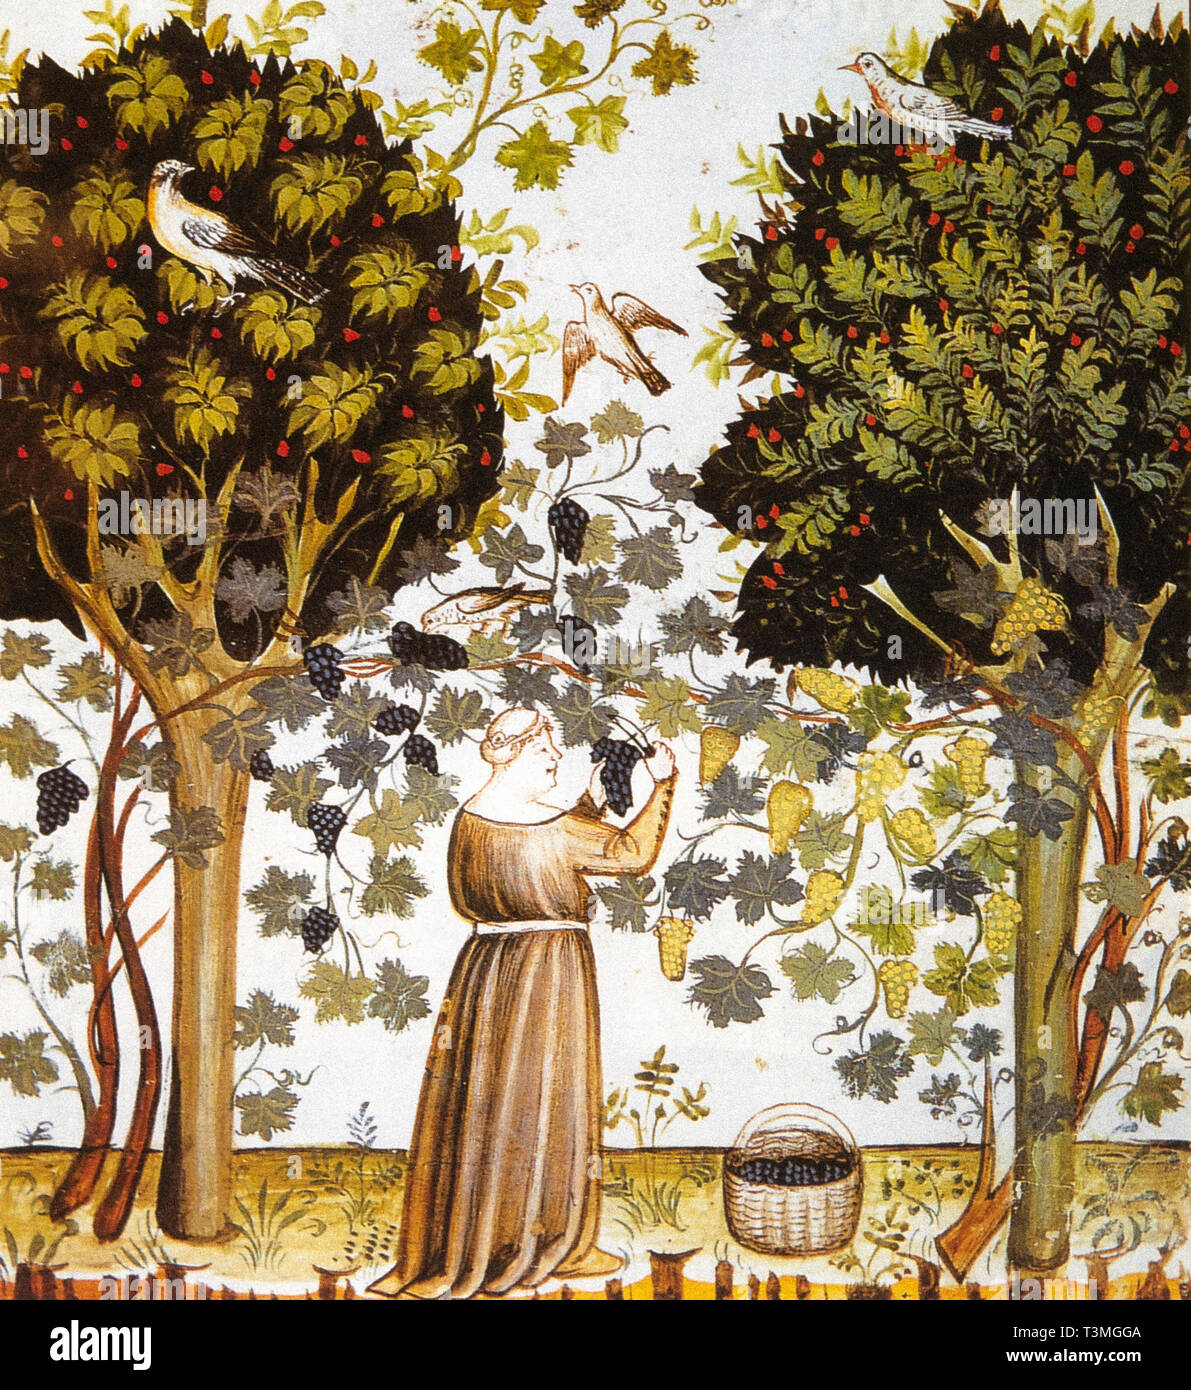 Weinstock Marited zwischen Bäumen, ein Prozess namens "alteno', die in den letzten Jahrhunderten des Mittelalters war erfolgreich. Stockfoto